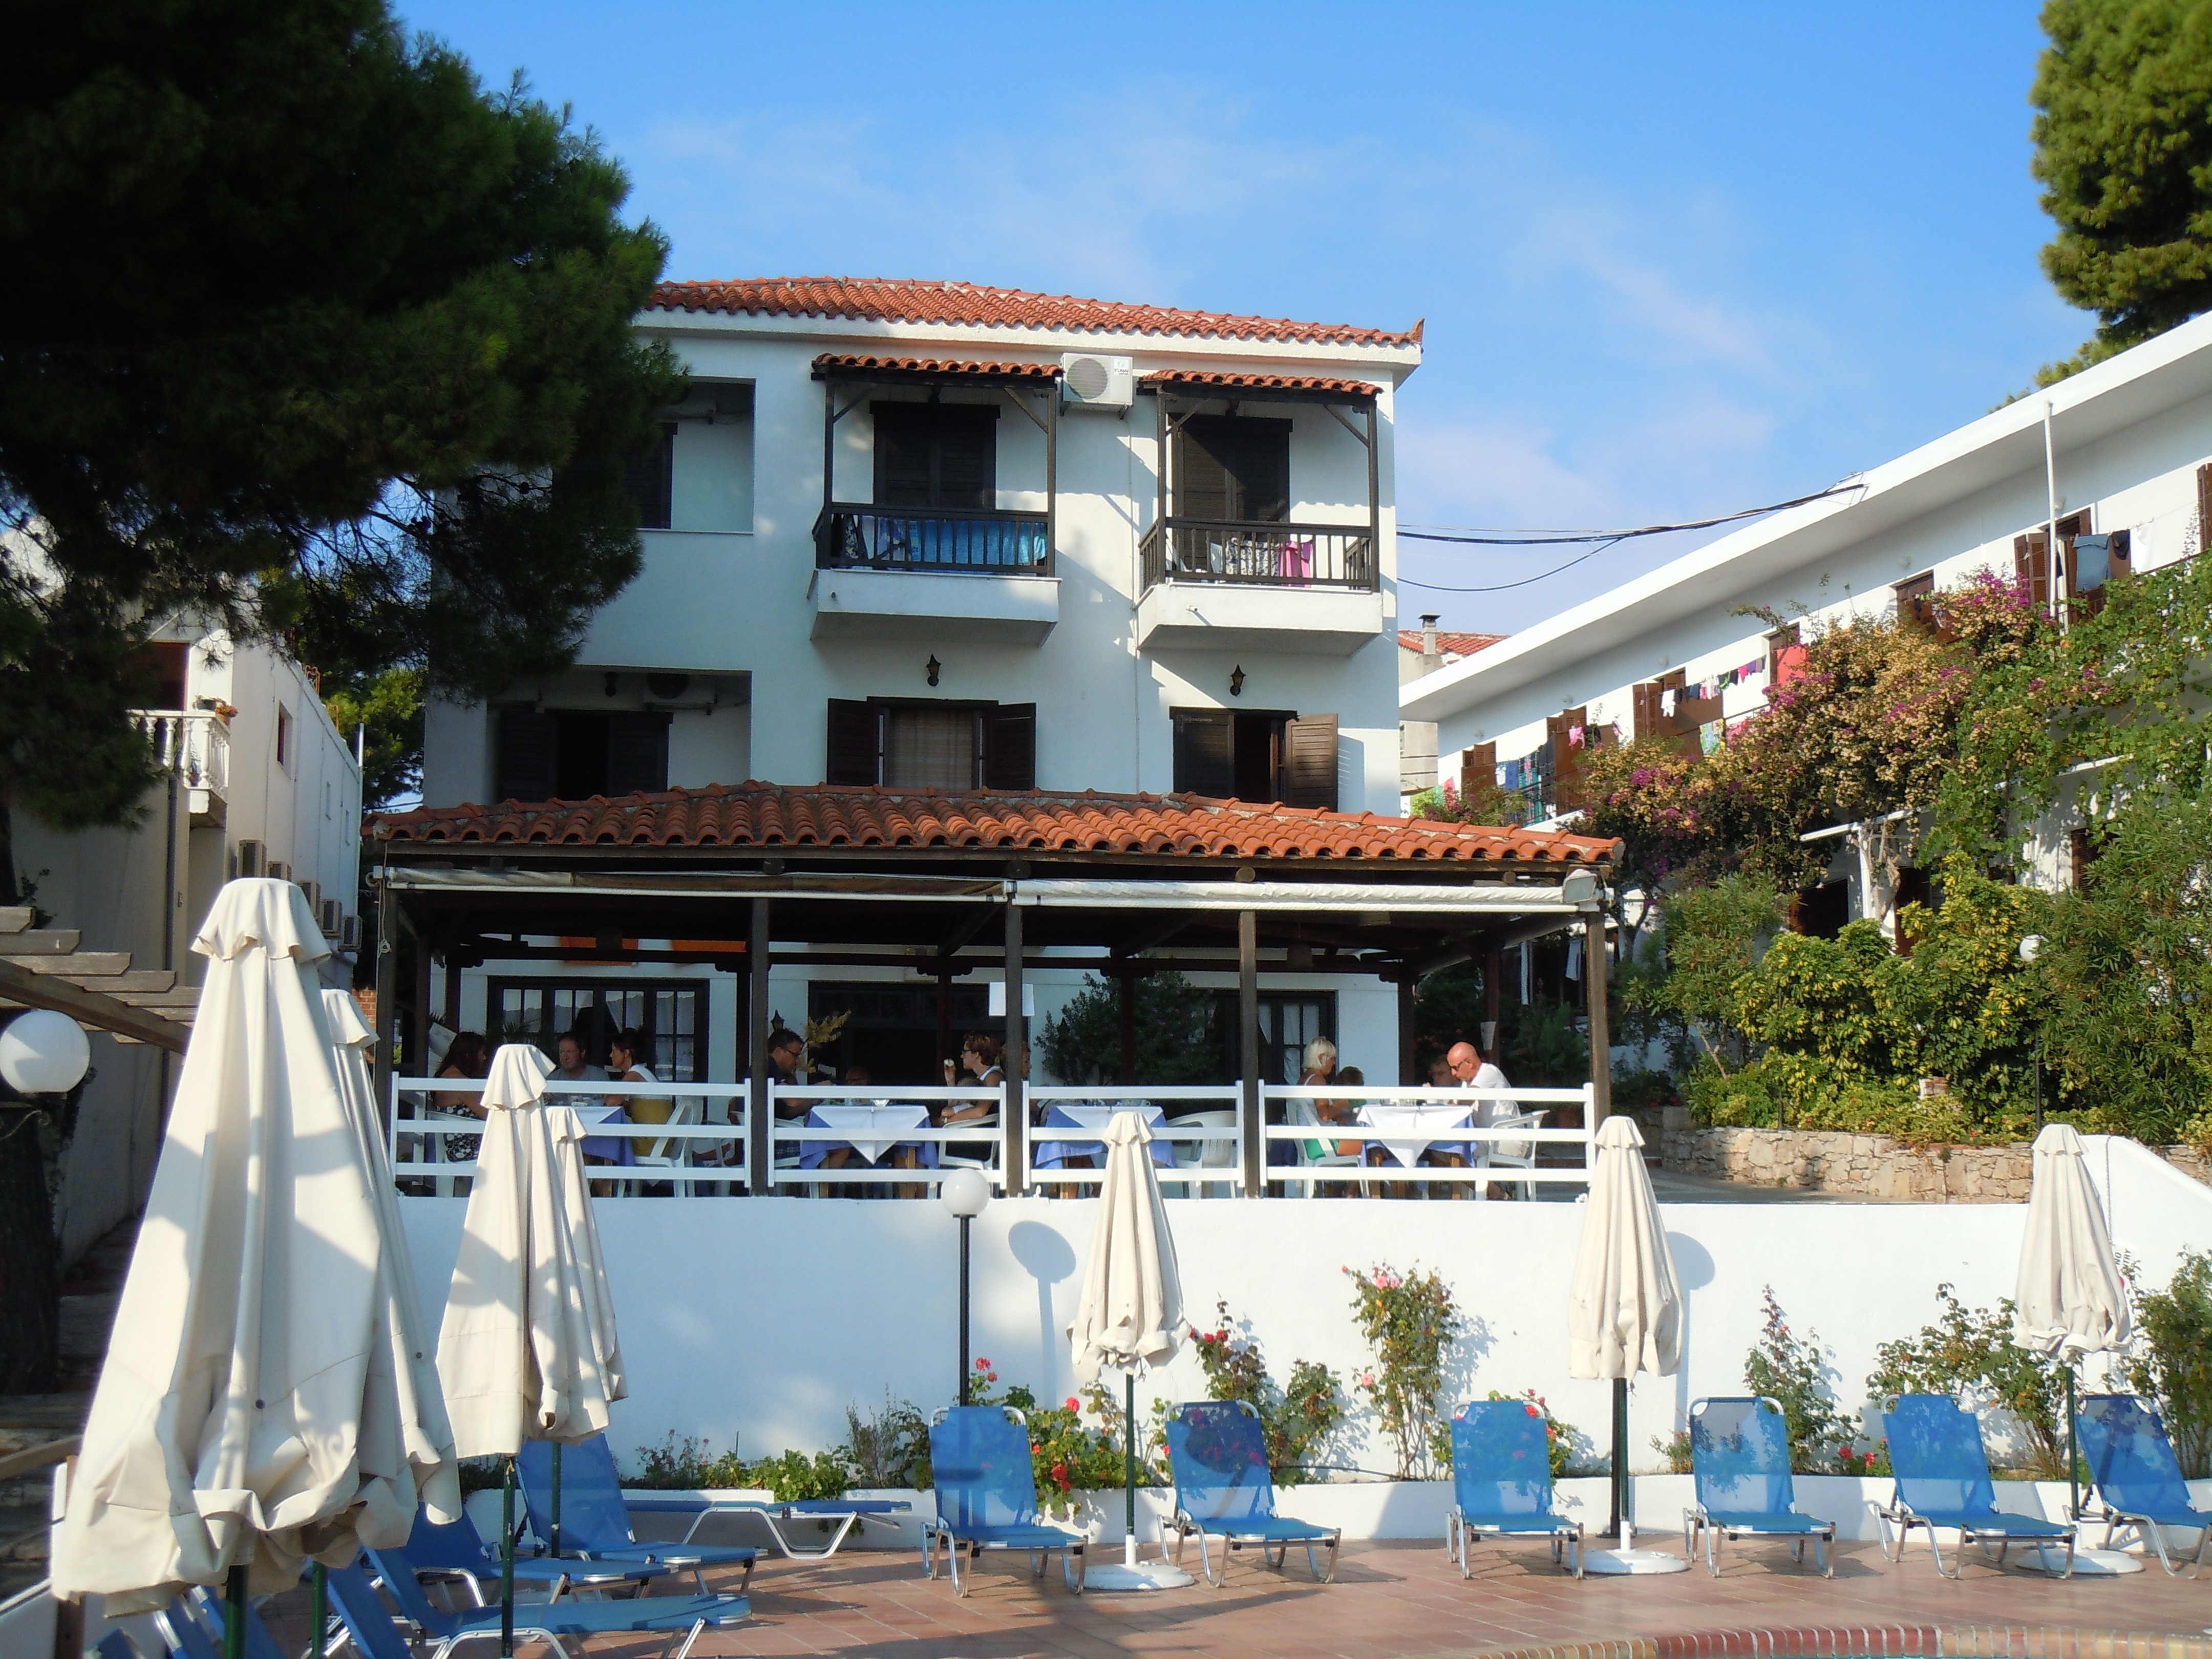  Paradise Hotel , Patitiri, Grécia - 55 Avaliações dos hóspedes  . Reserve seu hotel agora mesmo!